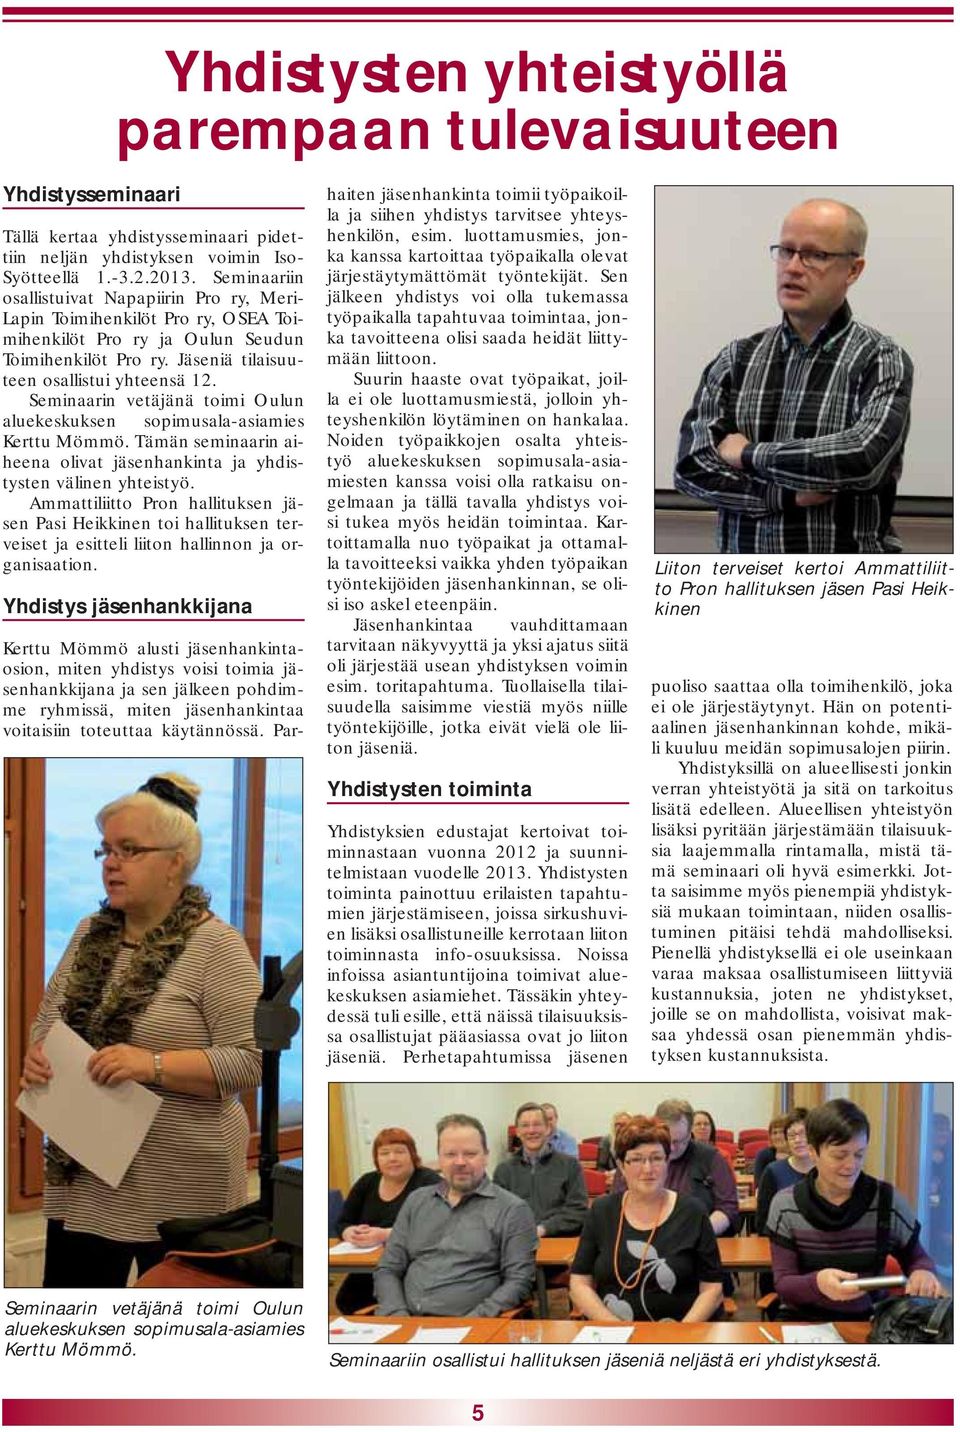 Seminaarin vetäjänä toimi Oulun aluekeskuksen sopimusala-asiamies Kerttu Mömmö. Tämän seminaarin aiheena olivat jäsenhankinta ja yhdistysten välinen yhteistyö.